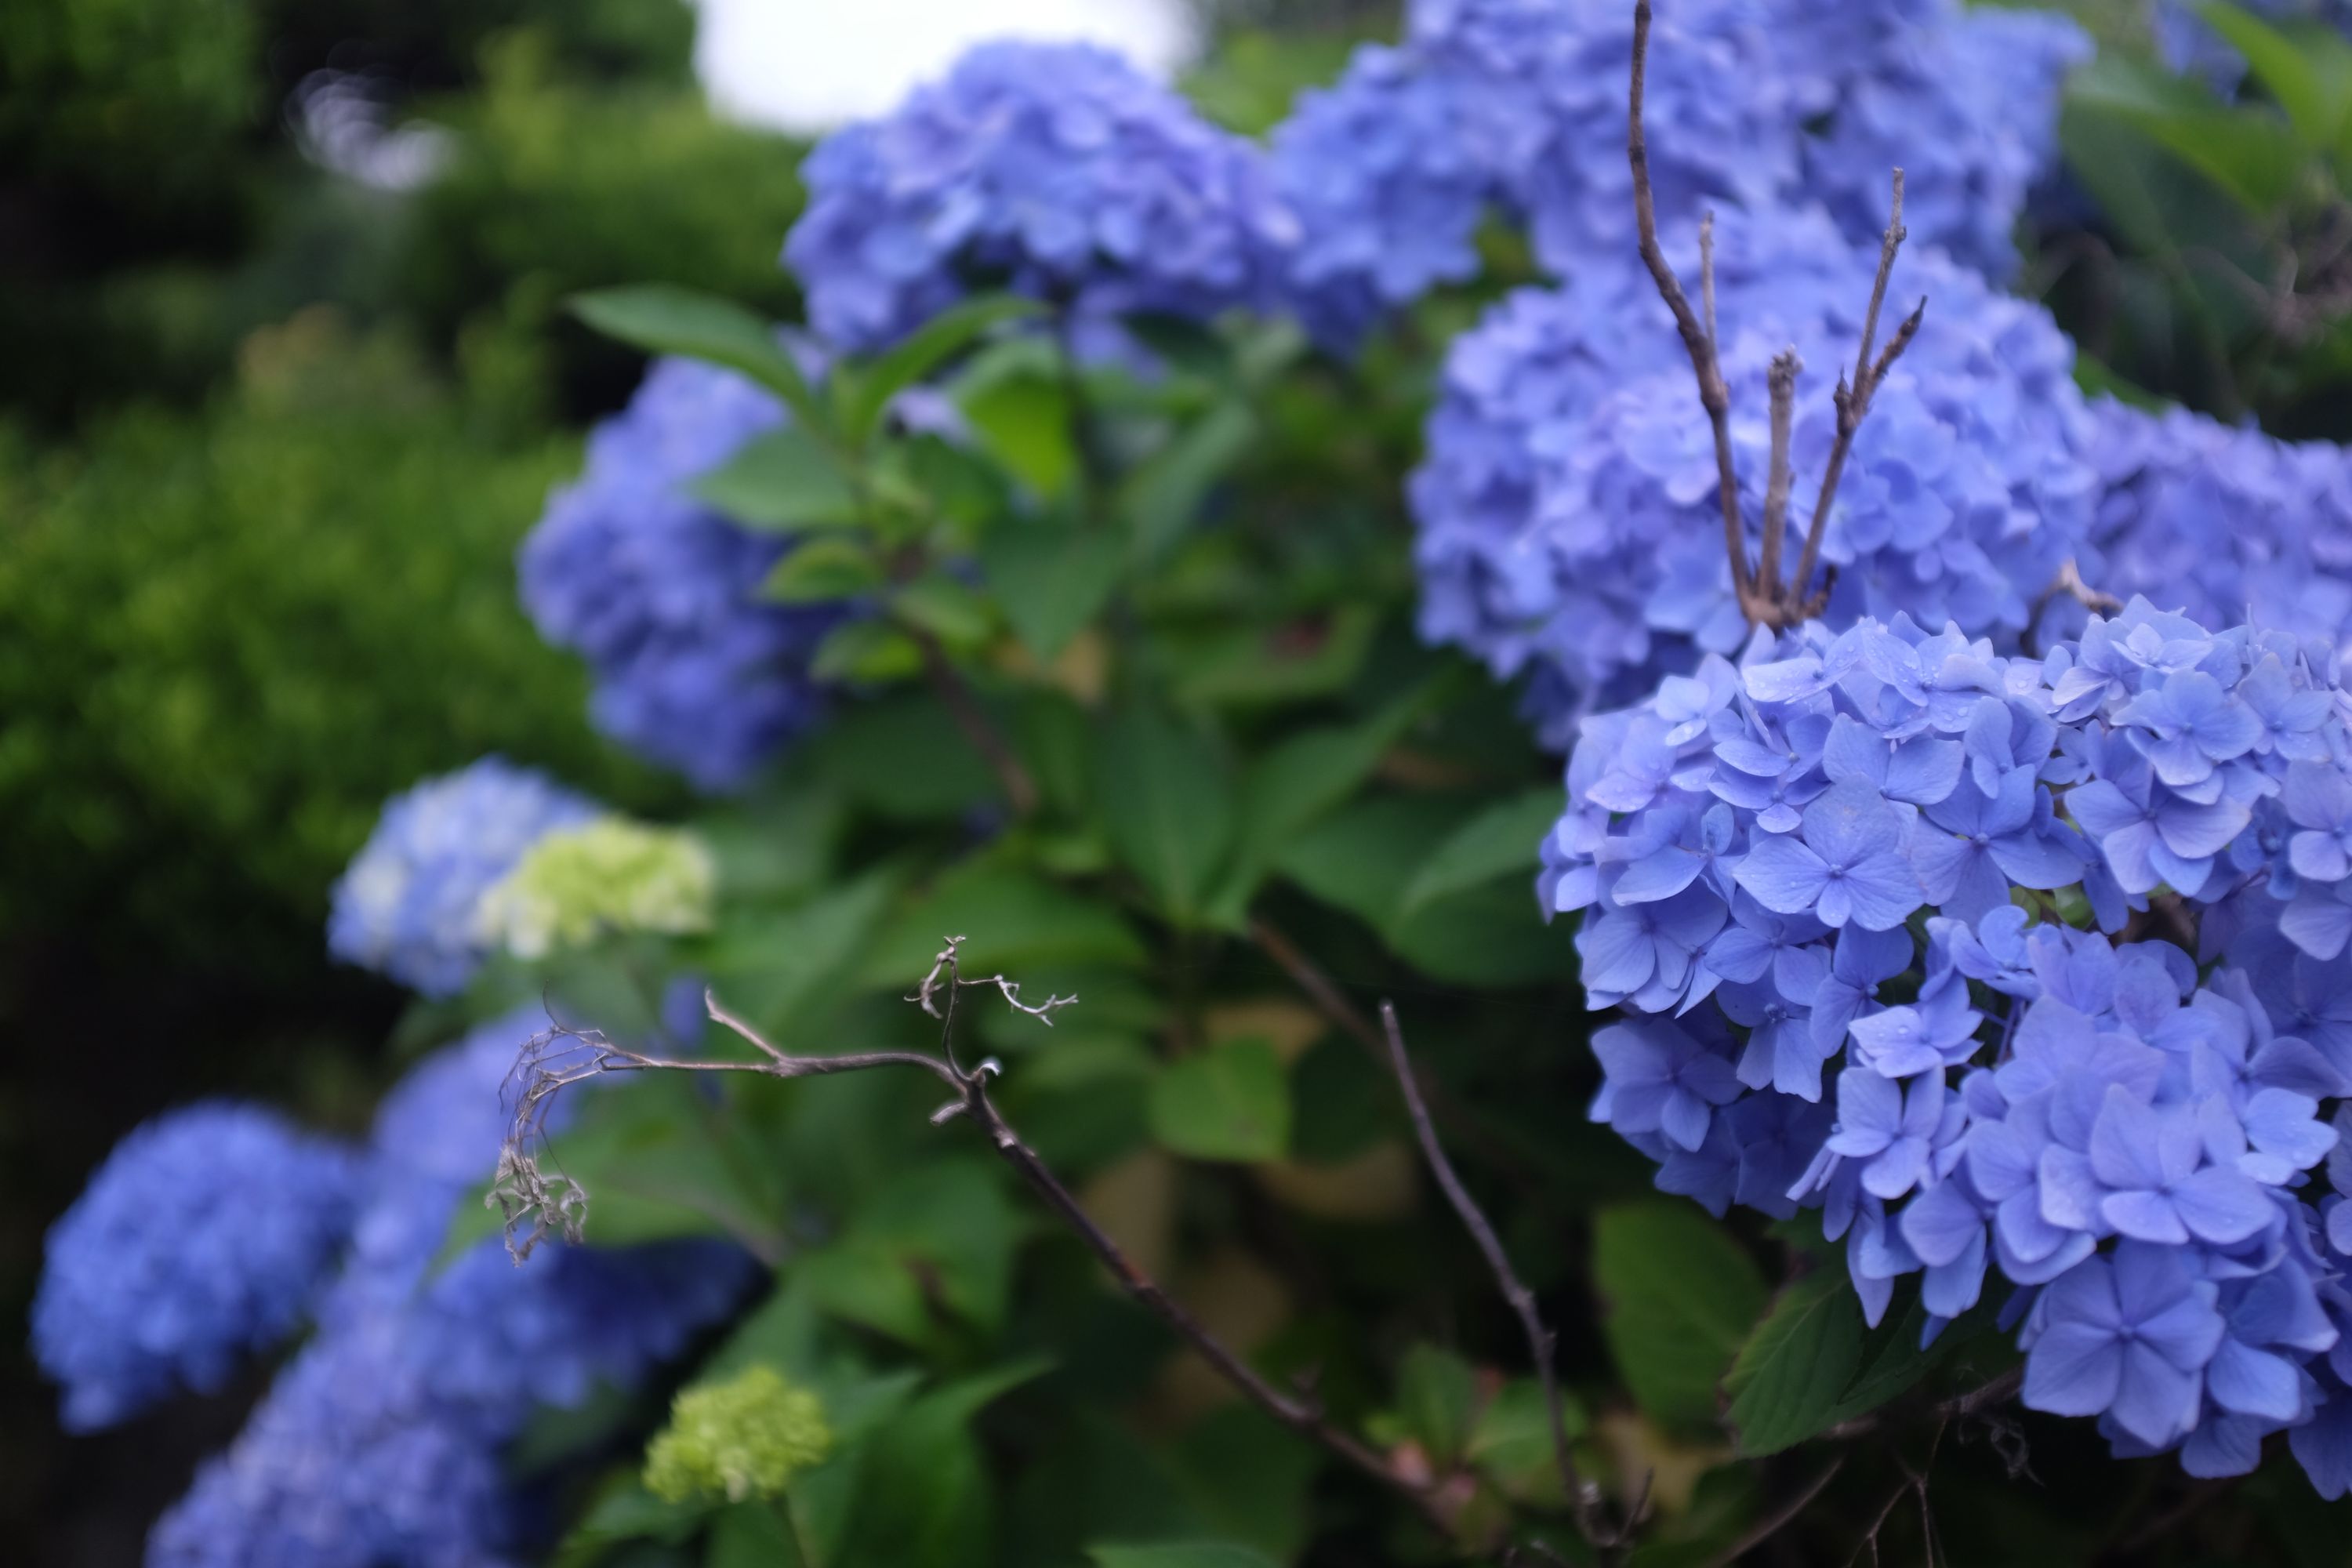 Blue hydrangea in bloom.